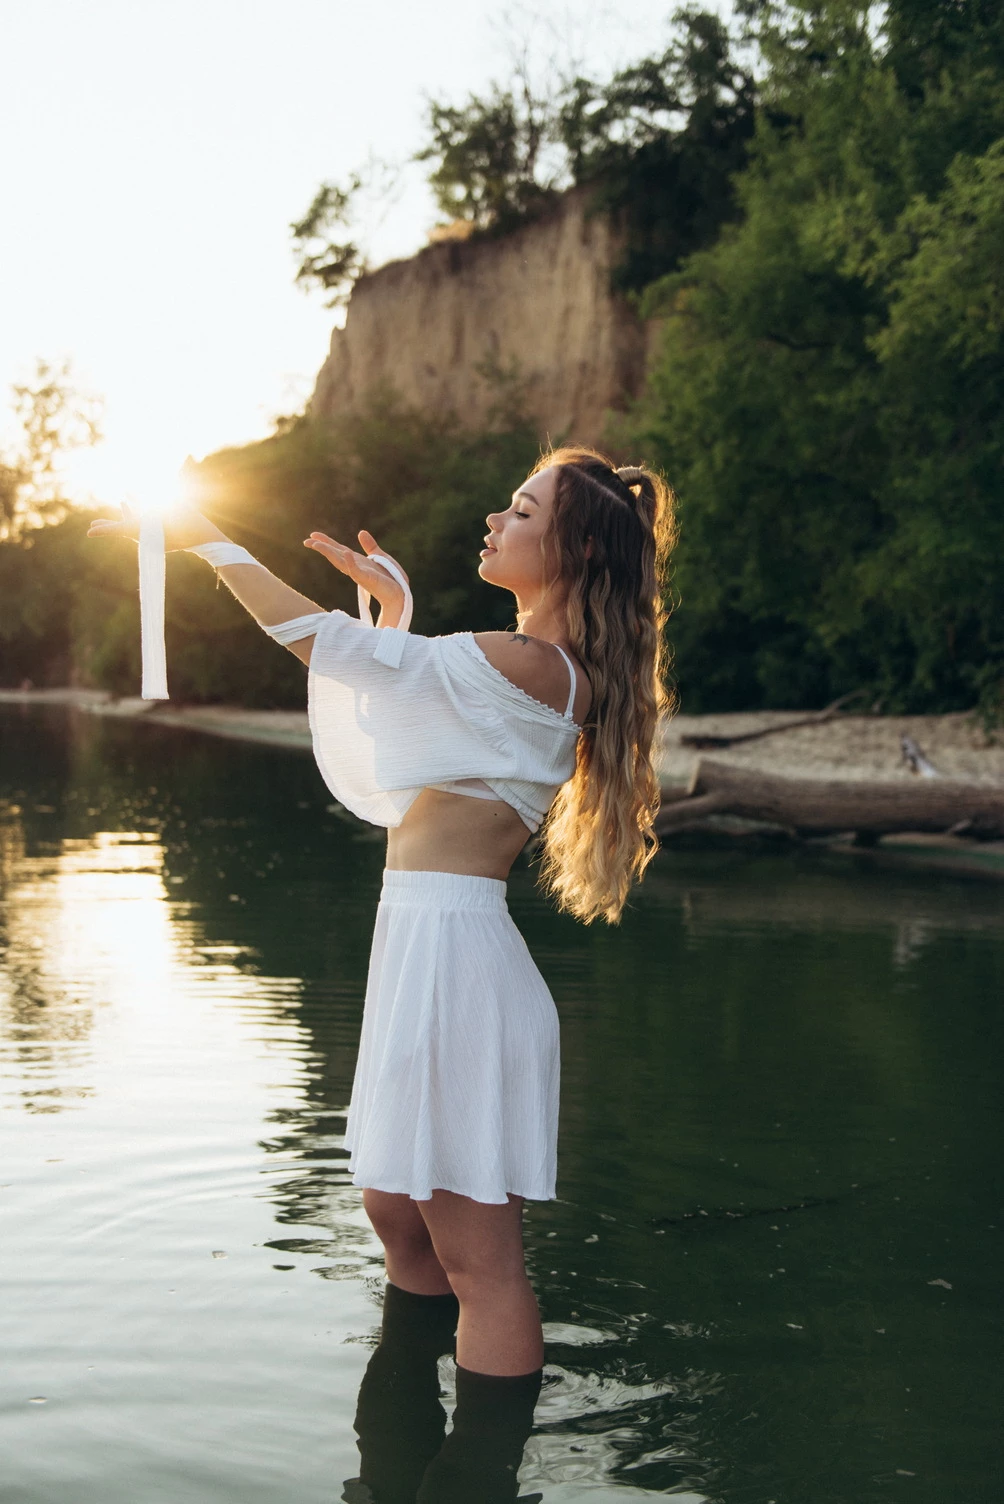 дівчина в білосніжному вбранні знаходиться в річці, з руками, що тримають сонце, передаючи енергію і відчуття життєвої сили, які випромінюються з природи